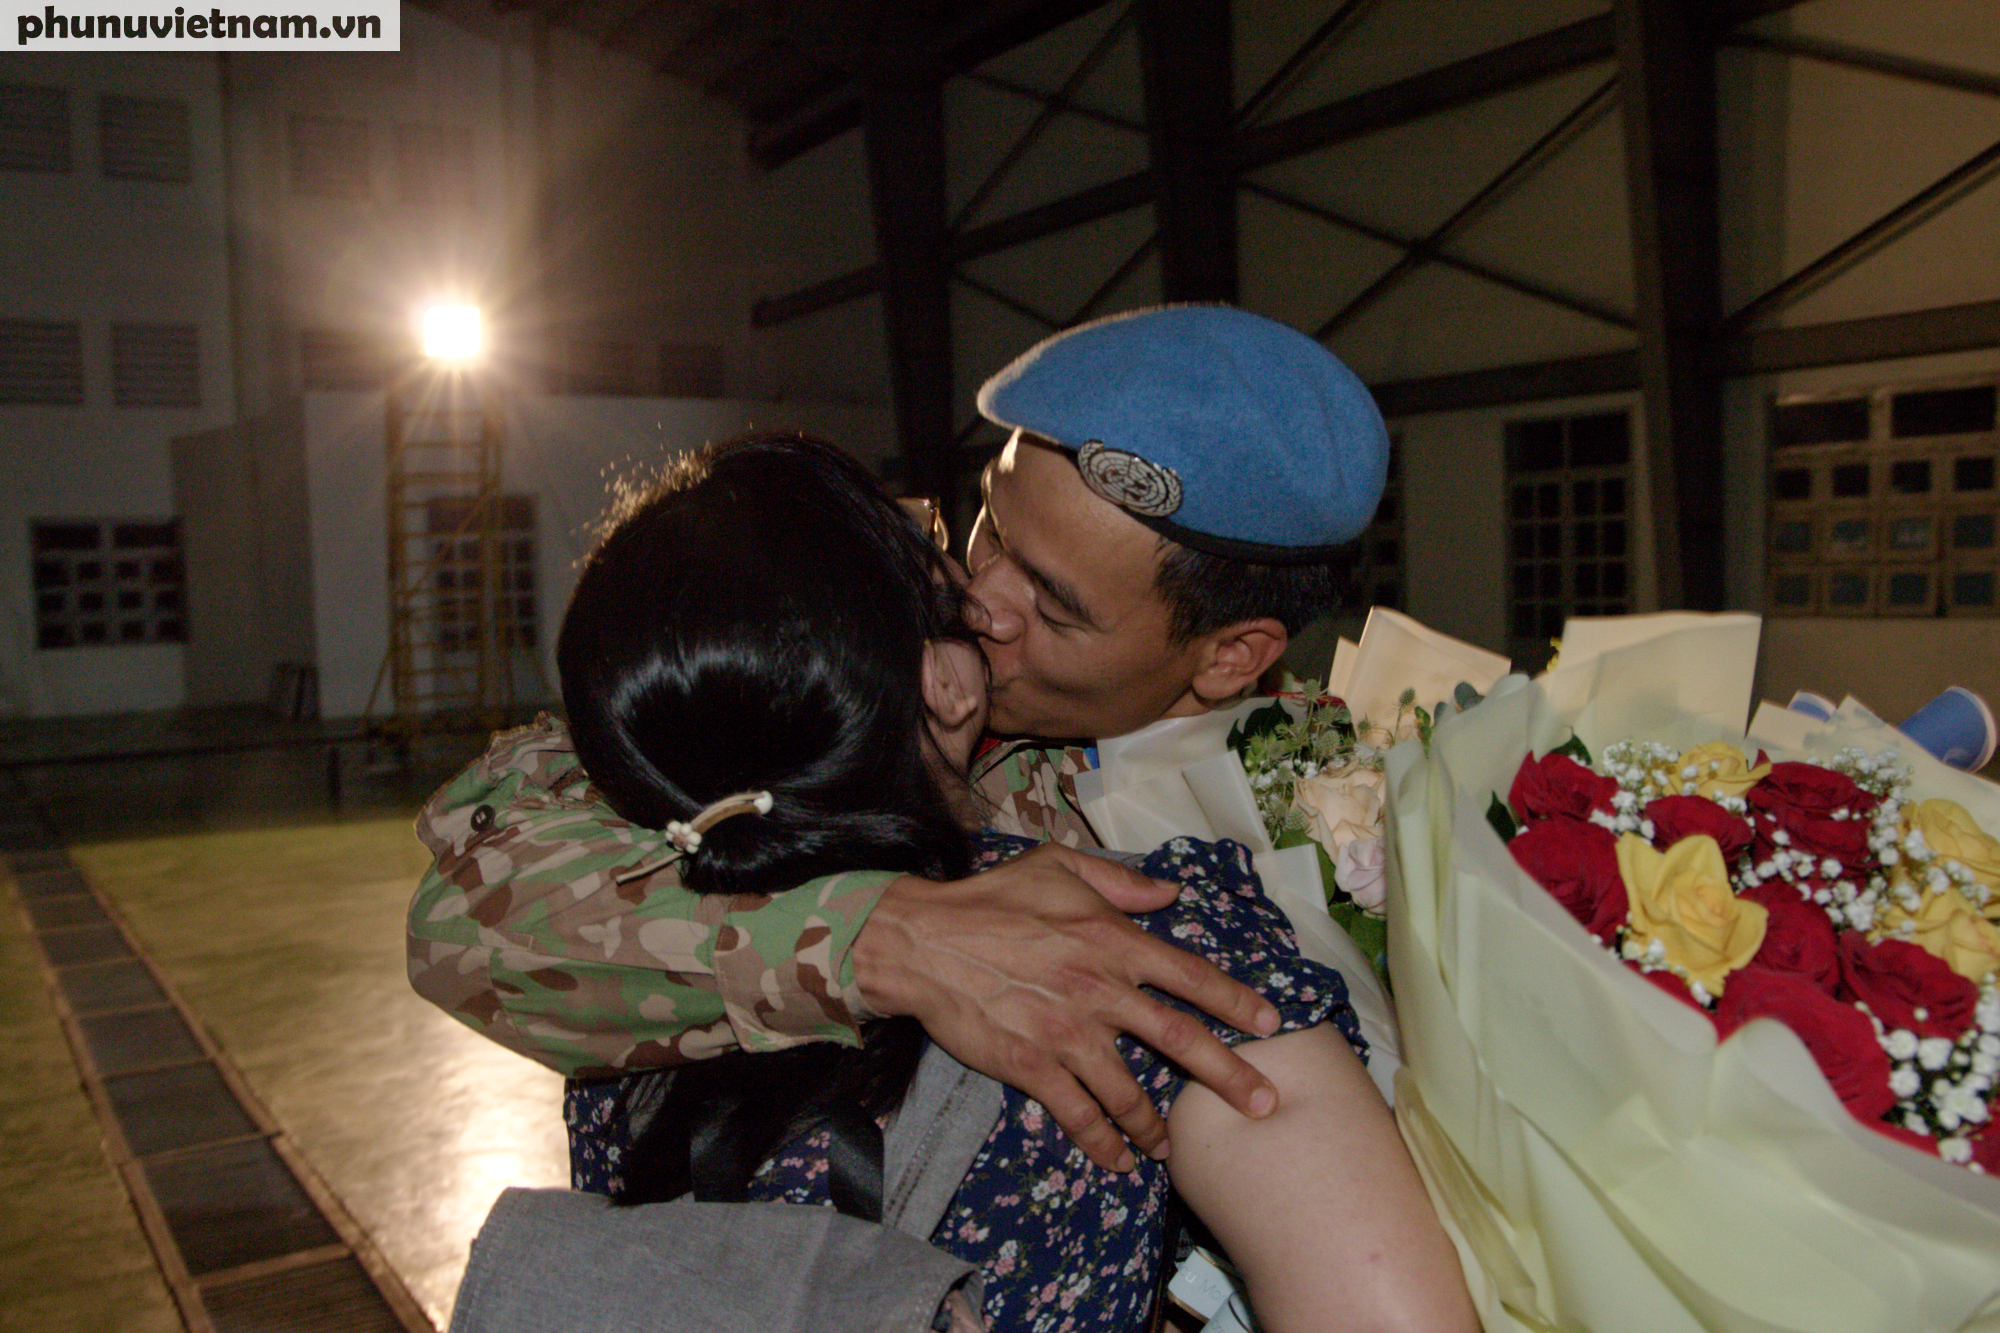 Nu hôn nồng cháy mà chiến sĩ Nguyễn Văn Tám như thể muốn bù đắp tất cả cho người vợ  vượt cạn và nuôi con khi không có mình bên cạnh